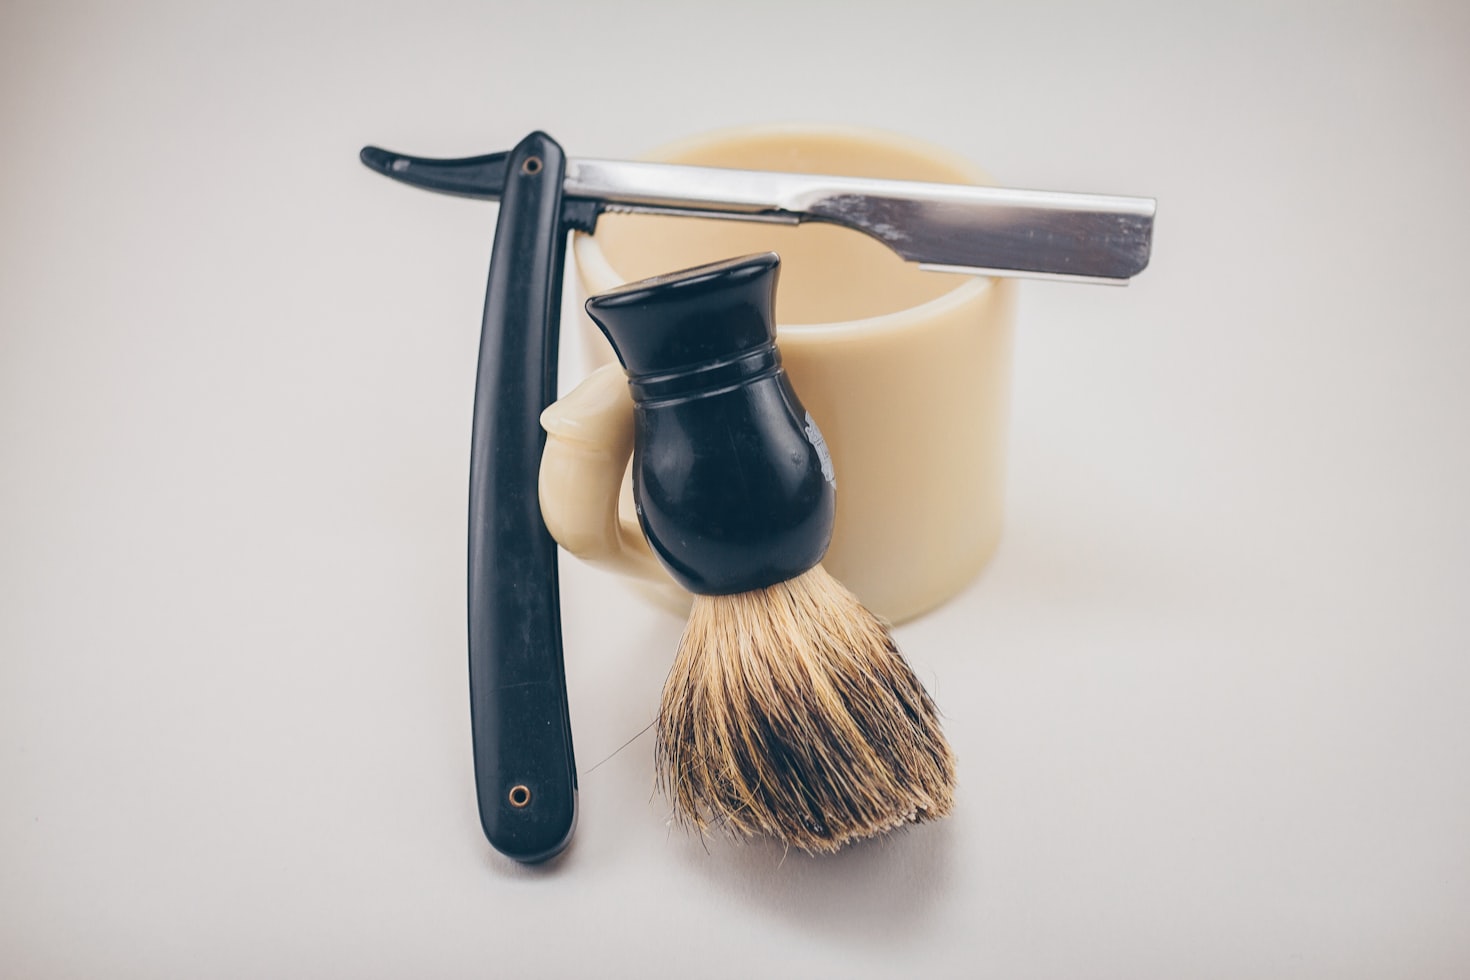 Traditional Cut Throat Razor with Shaving Brush and Shaving Mug